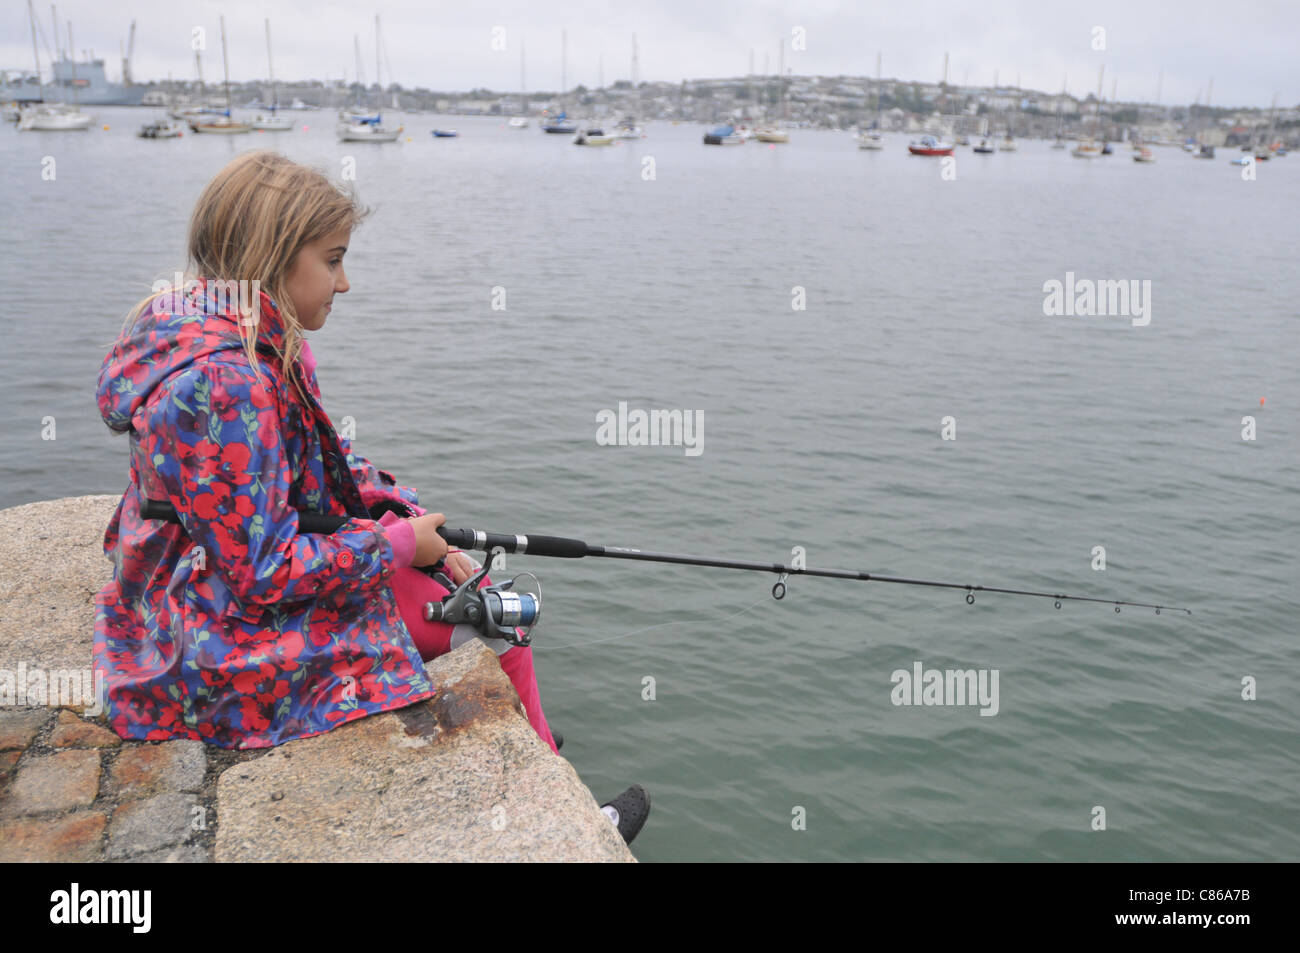 Une fillette de 8 ans la pêche dans le rinçage, Cornwall Falmouth avec en arrière-plan. Banque D'Images